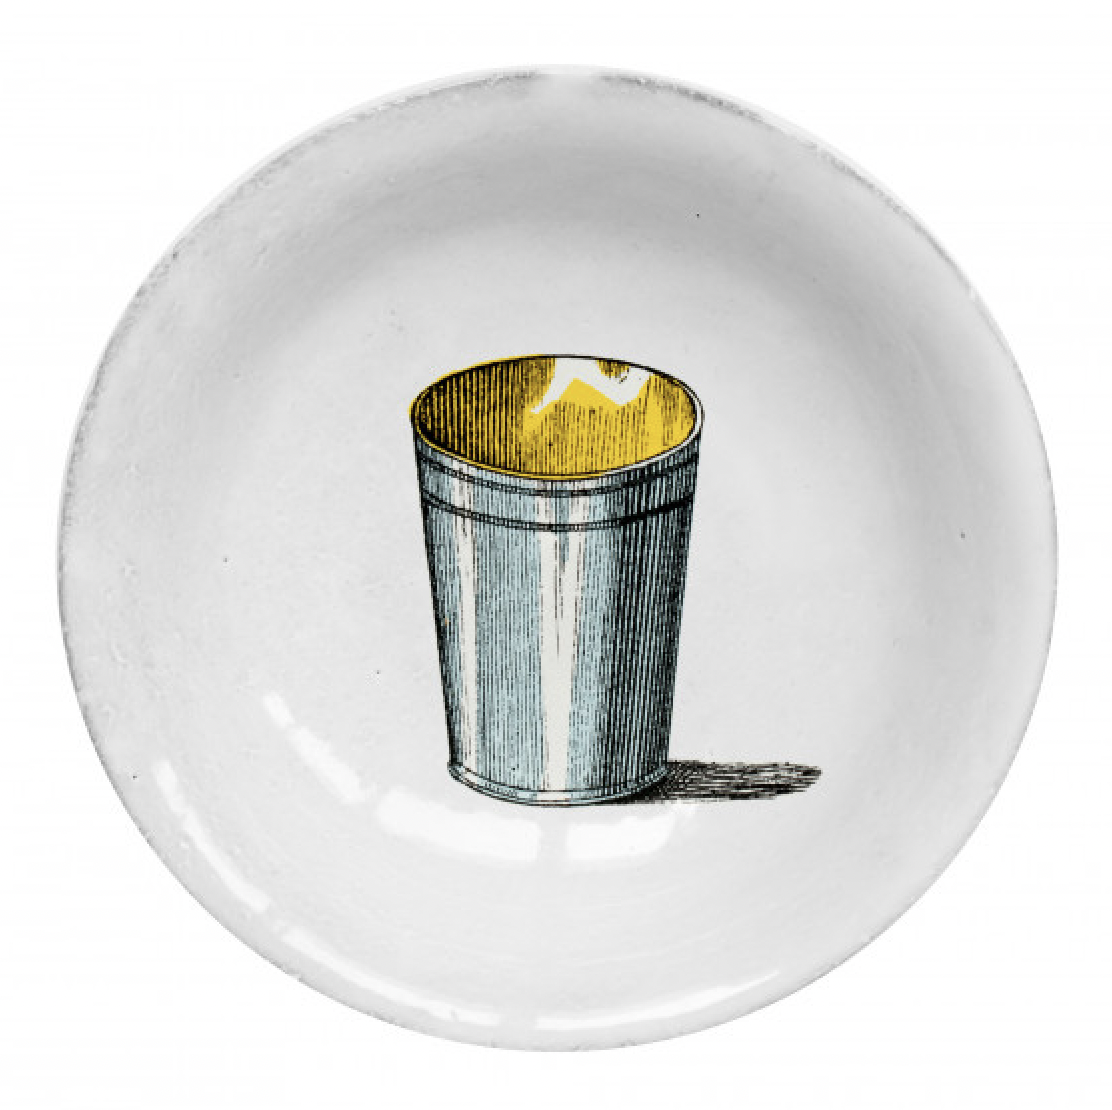 Astier de Villatte John Derian Dish - Silver Cup